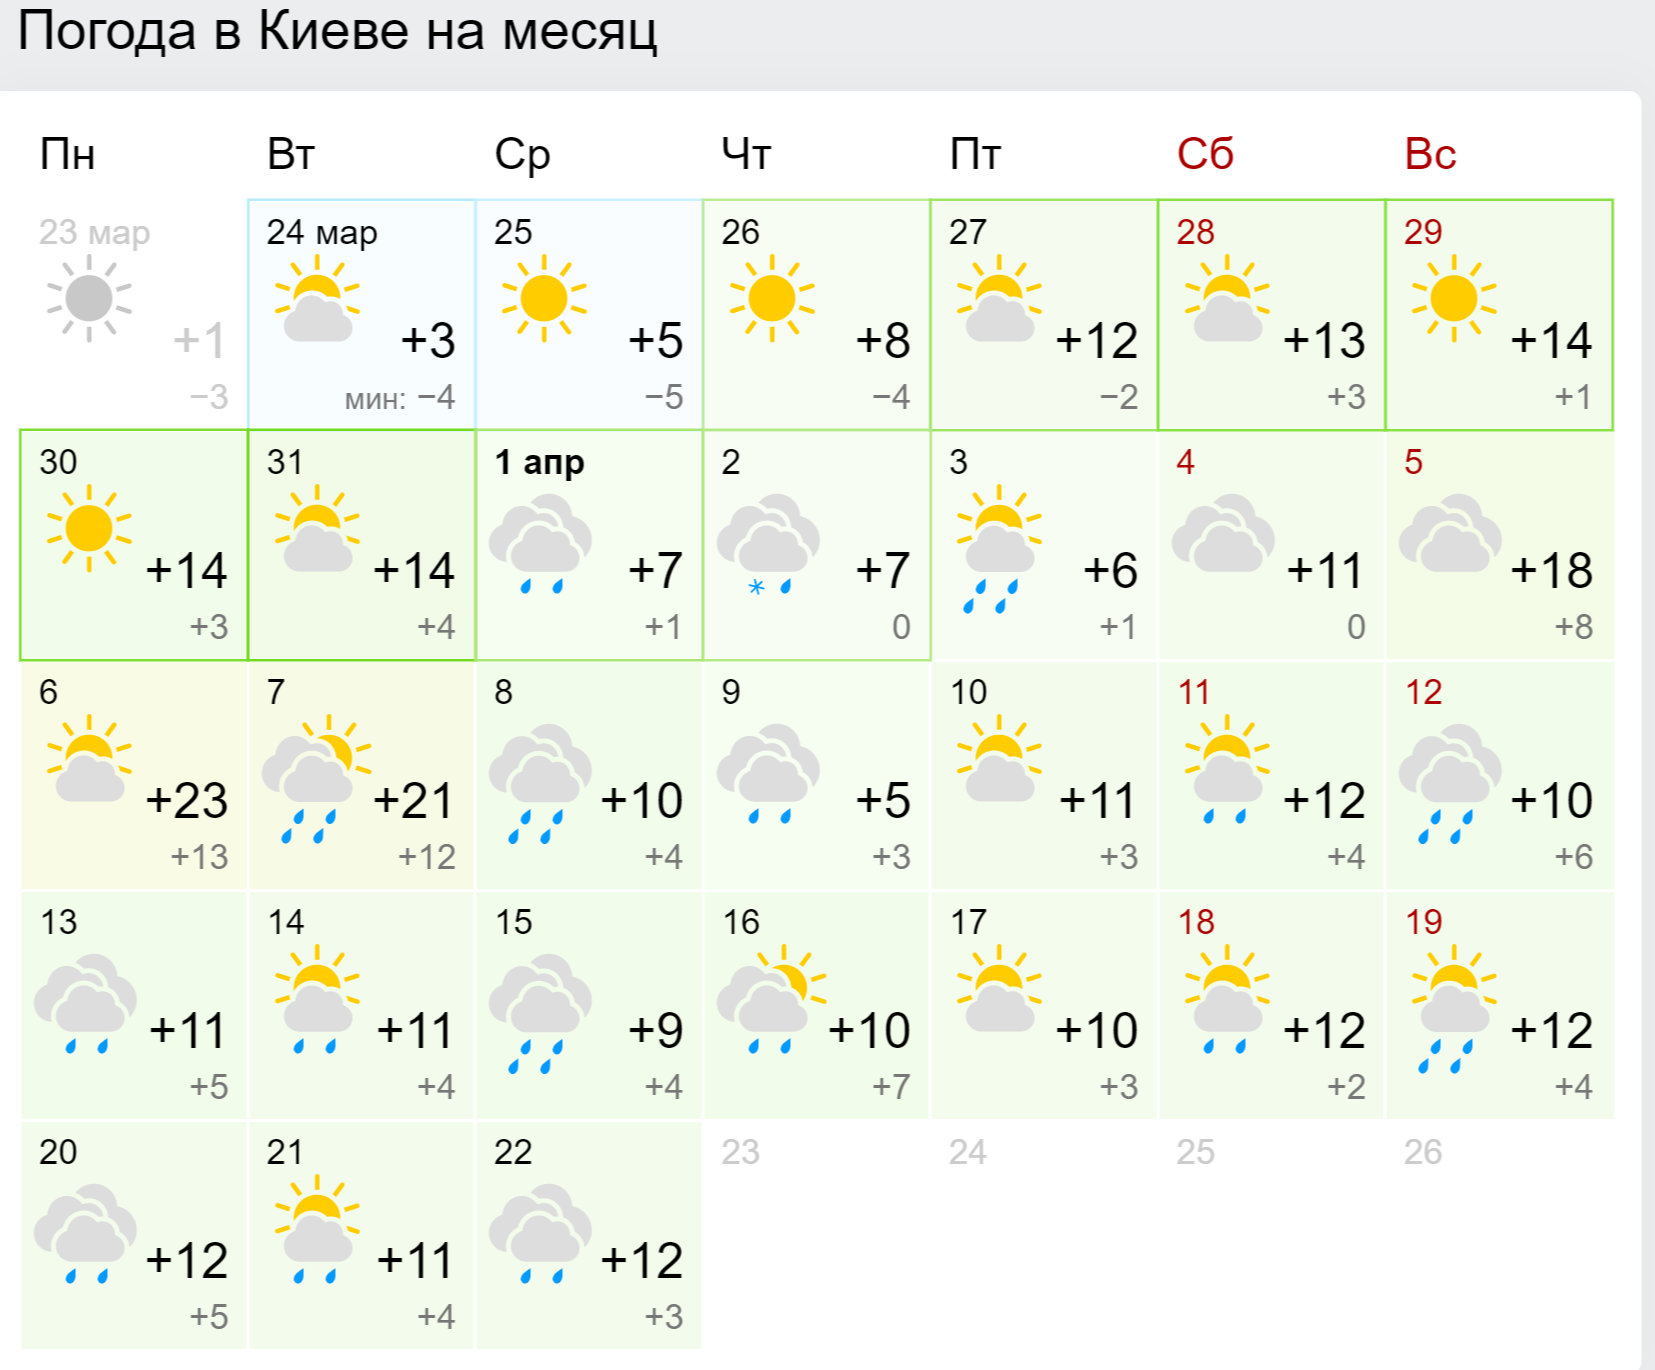 Прогноз погоды в Киеве на месяц